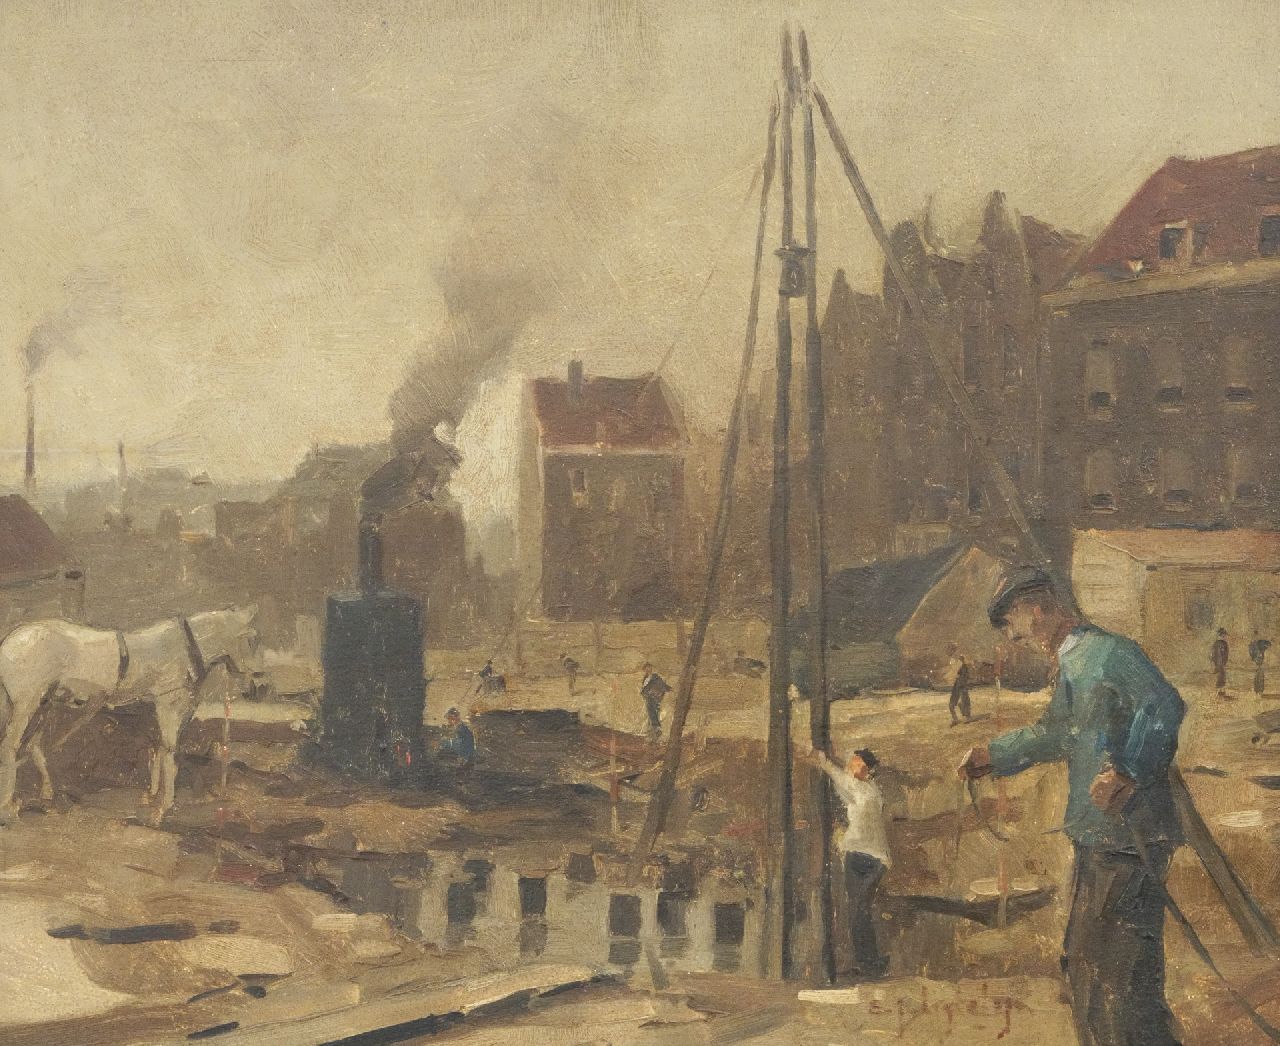 Ligtelijn E.J.  | Evert Jan Ligtelijn, Bouwput in Amsterdam, olieverf op paneel 39,8 x 47,9 cm, gesigneerd rechtsonder